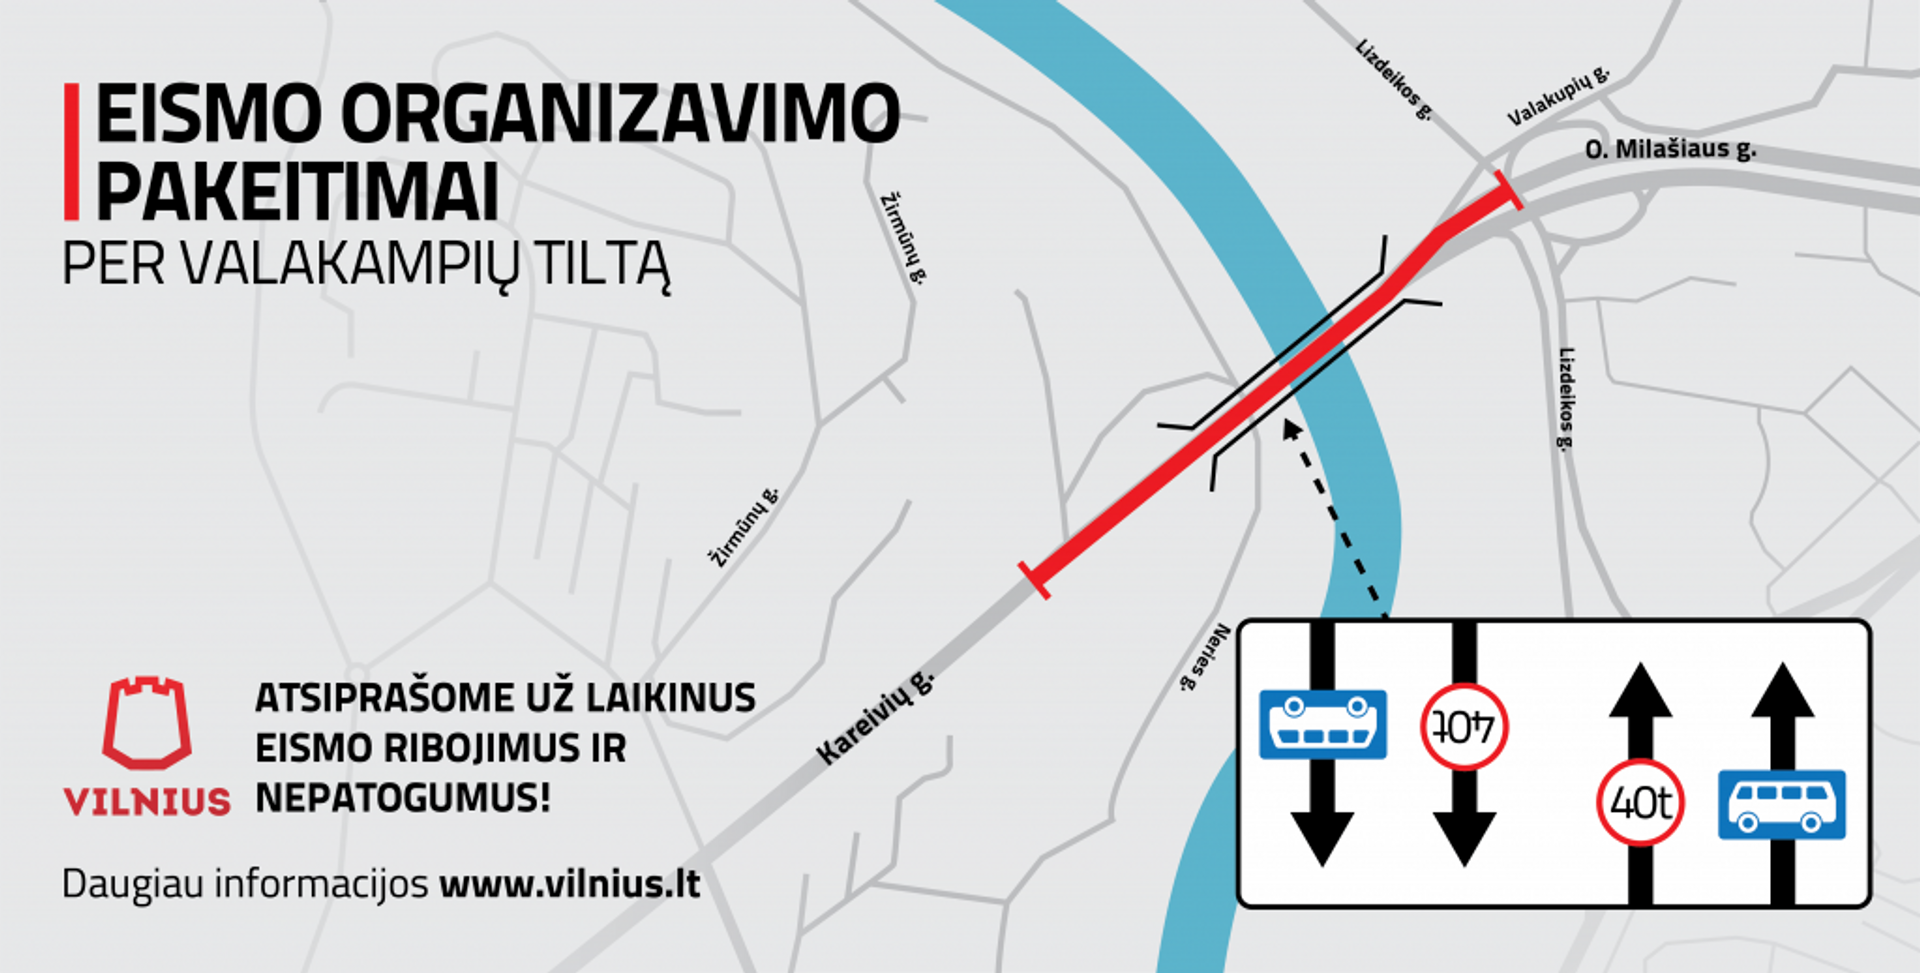 Dėl remonto darbų laikinai pasikeis eismo organizavimas per Valakampių tiltą - Sputnik Lietuva, 1920, 14.02.2021